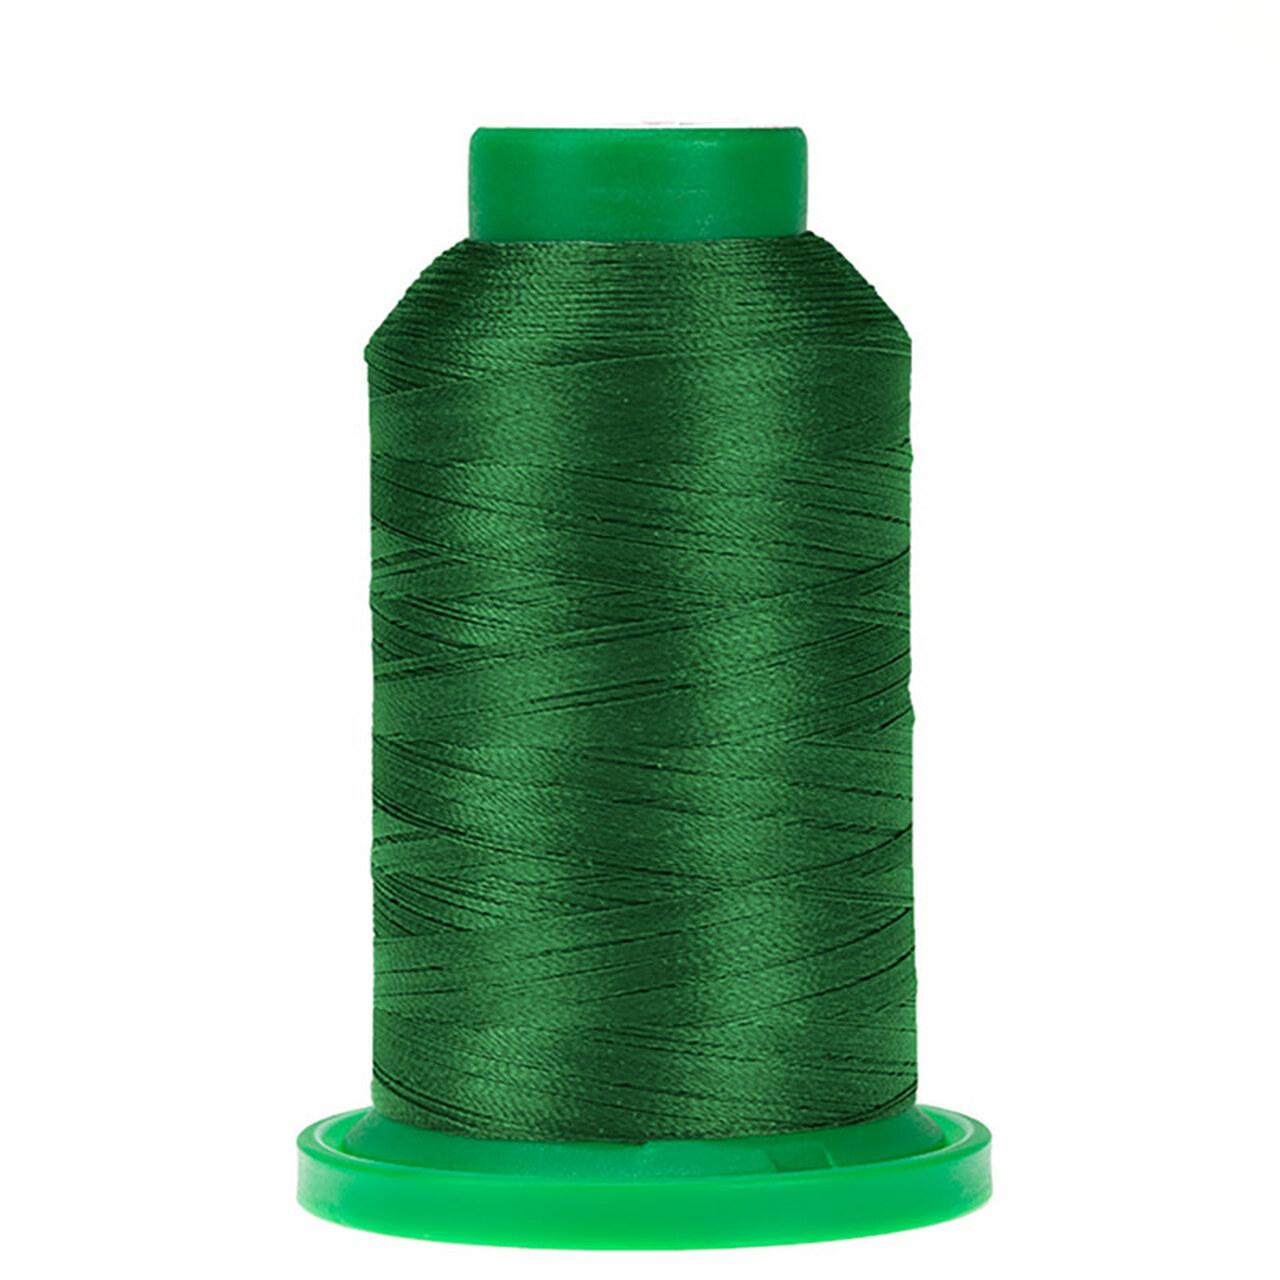 Thread - Isacord - Irish Green - 2922-5415